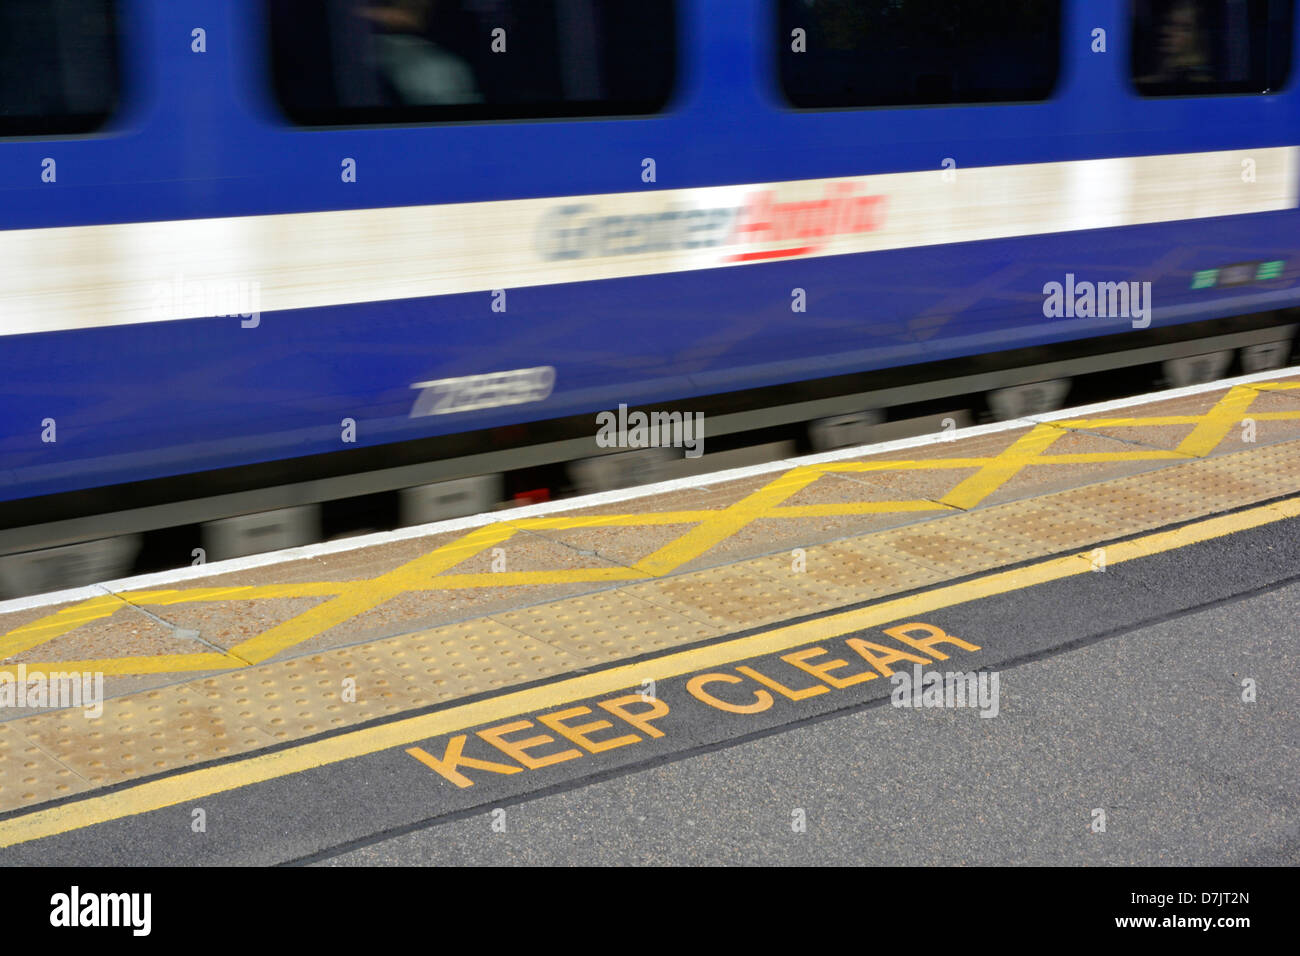 Schnell bewegenden Zug Bahnhof Bahnsteigkante mit Keep klare Warnzeichen nicht vorbei rutschen Pflasterung und gelbe Linie schlüpfen Stockfoto